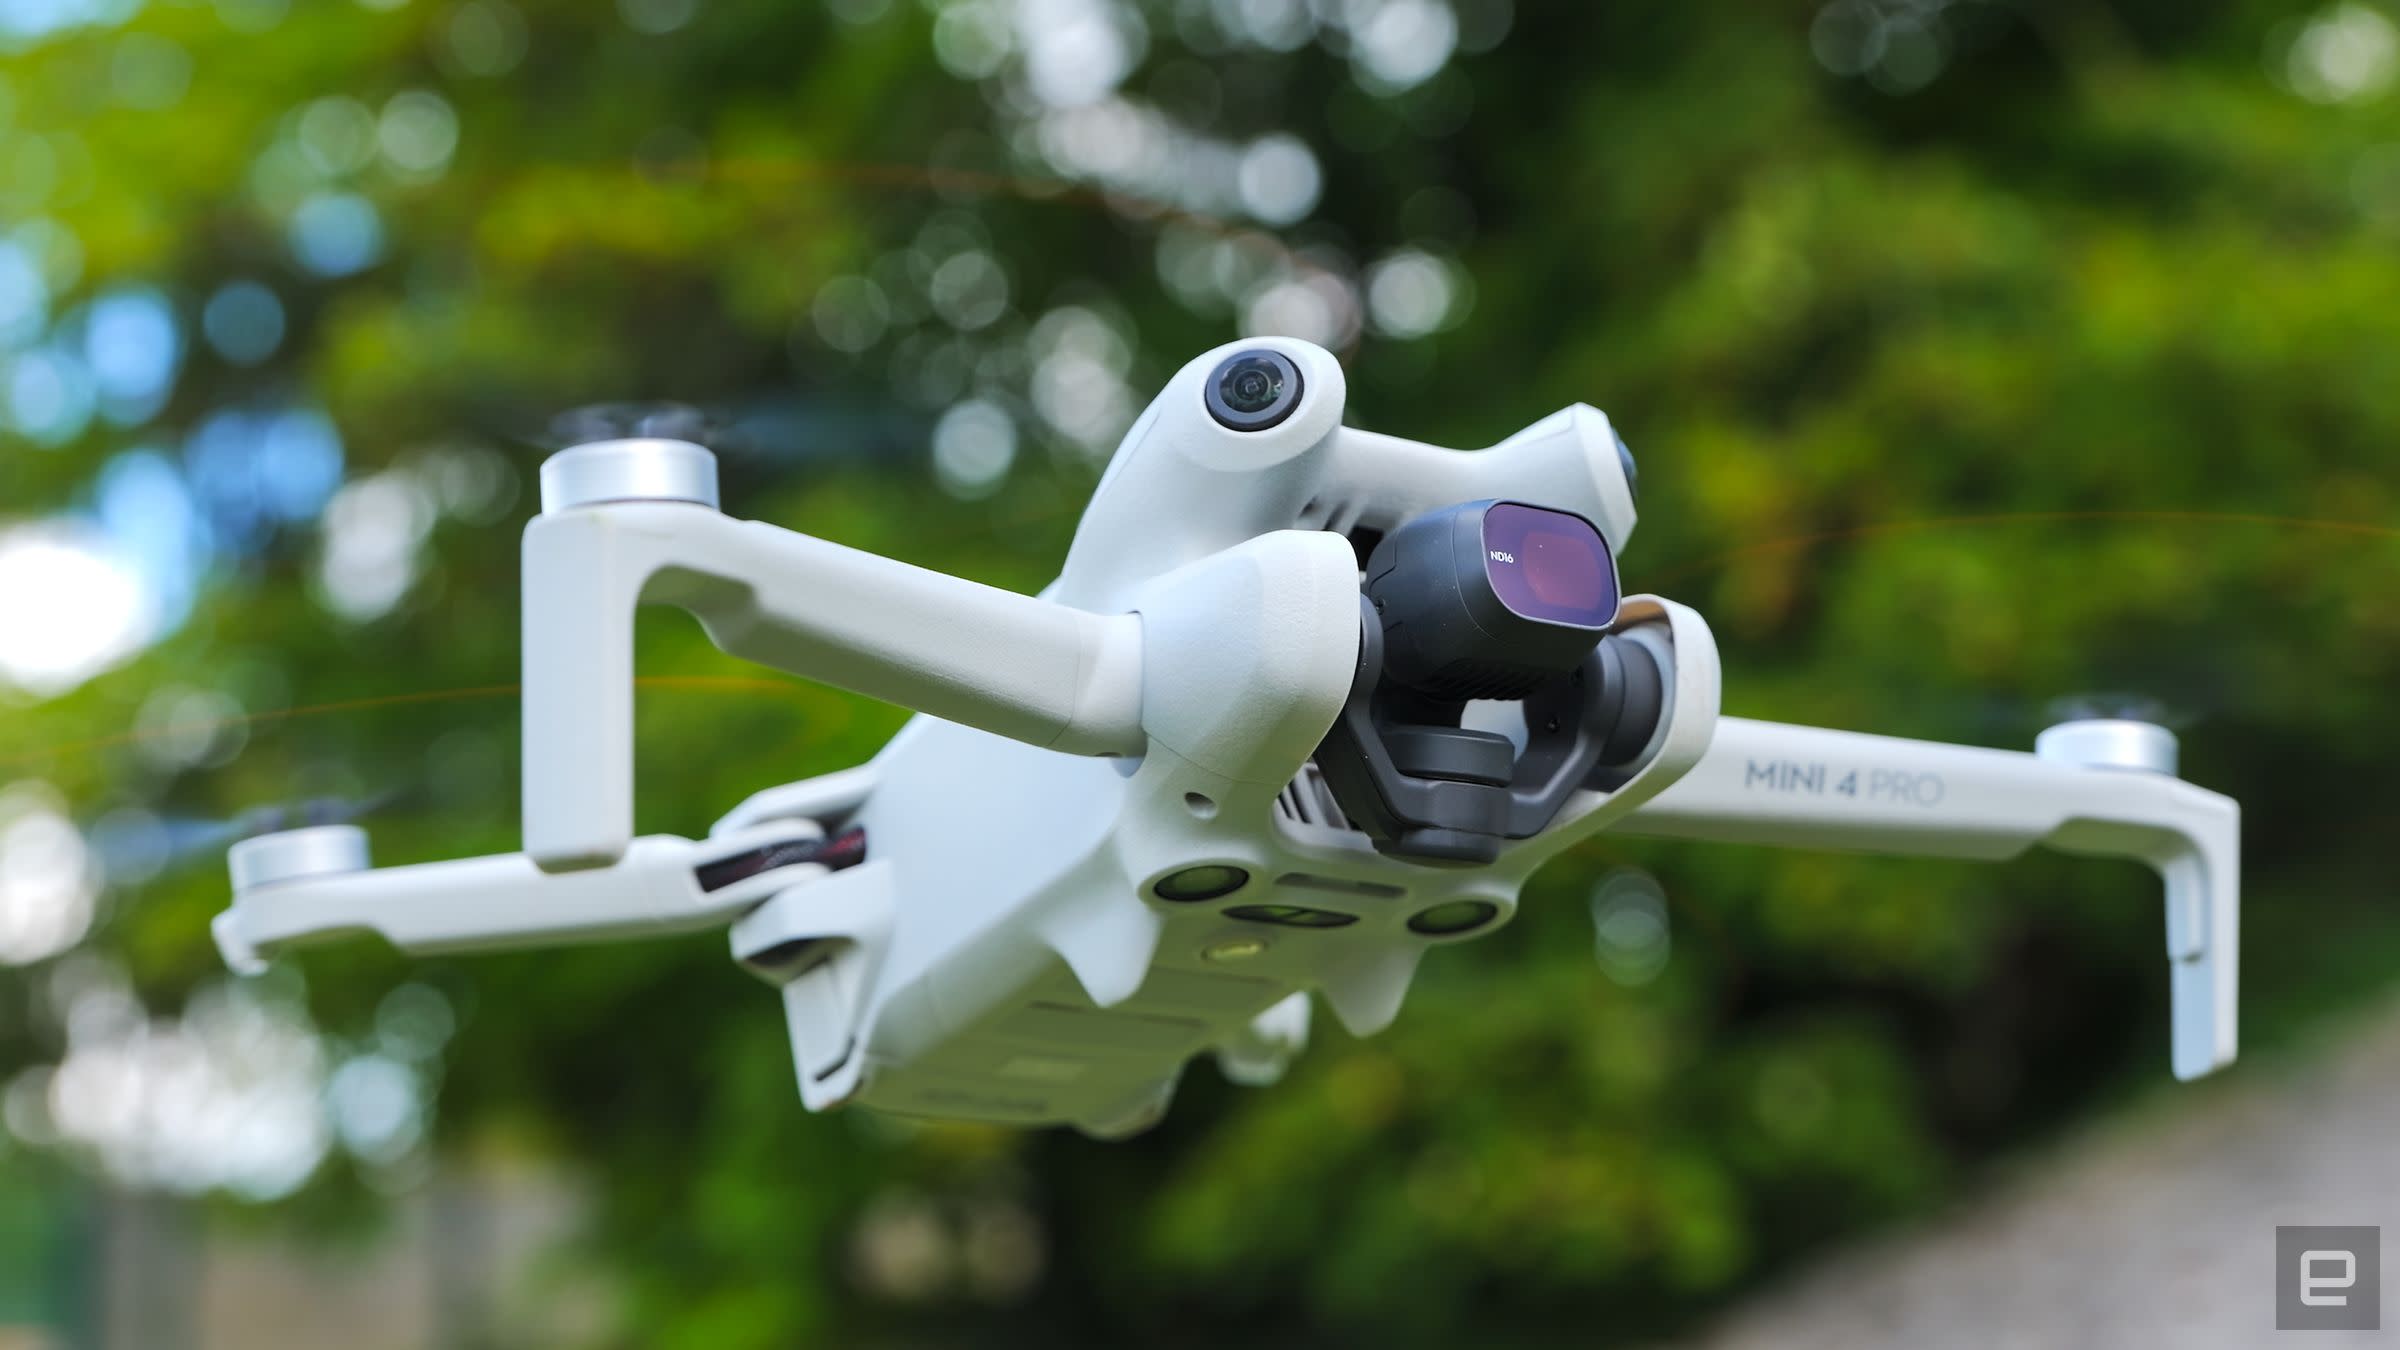 DJI Mini 4 Pro volando sobre un paisaje natural, mostrando su capacidad de captura en entornos al aire libre.